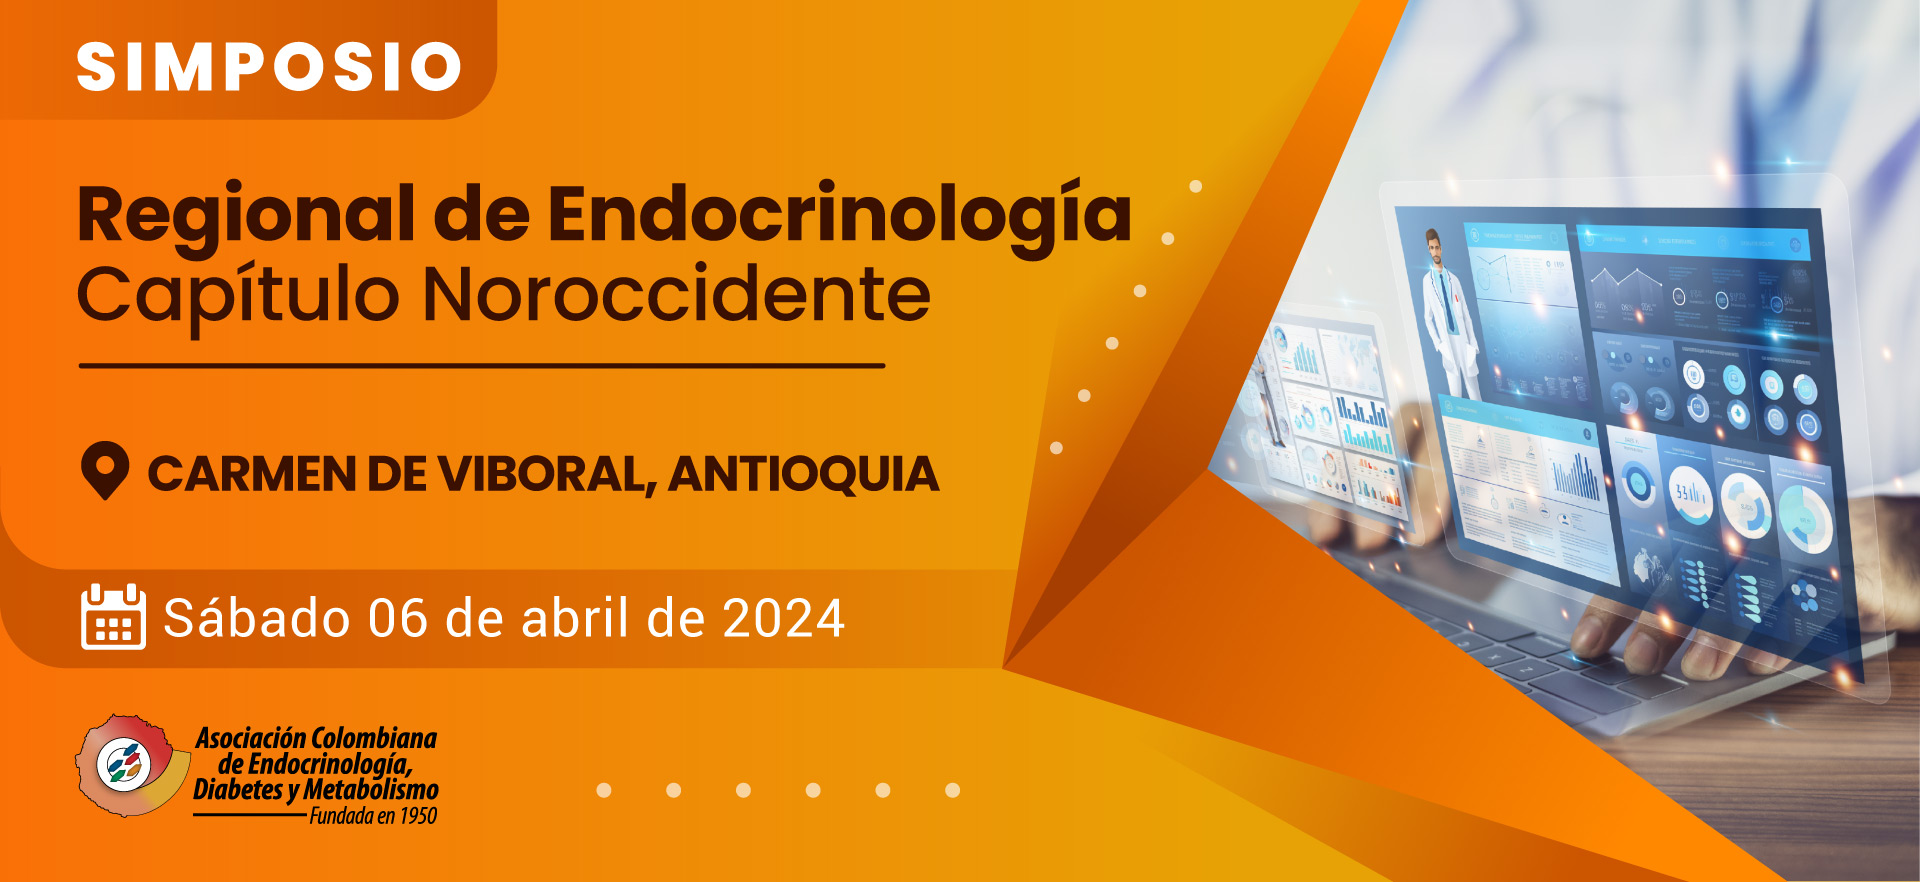 Simposio Regional de Endocrinología Capitulo Noroccidente